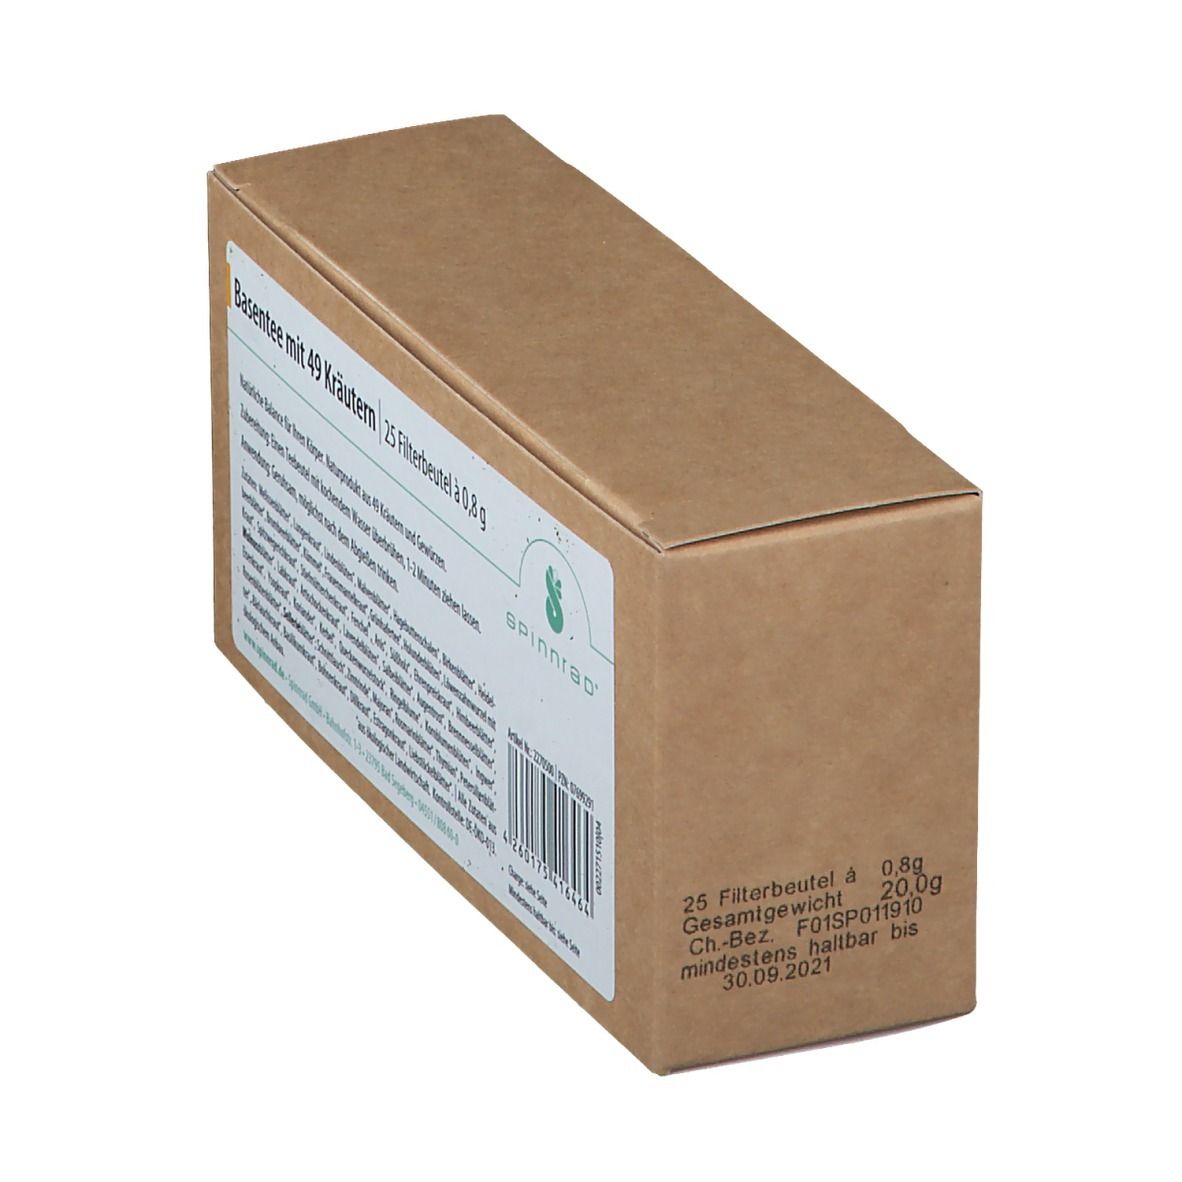 Spinnrad® Bio-Basentee mit 49 Kräutern